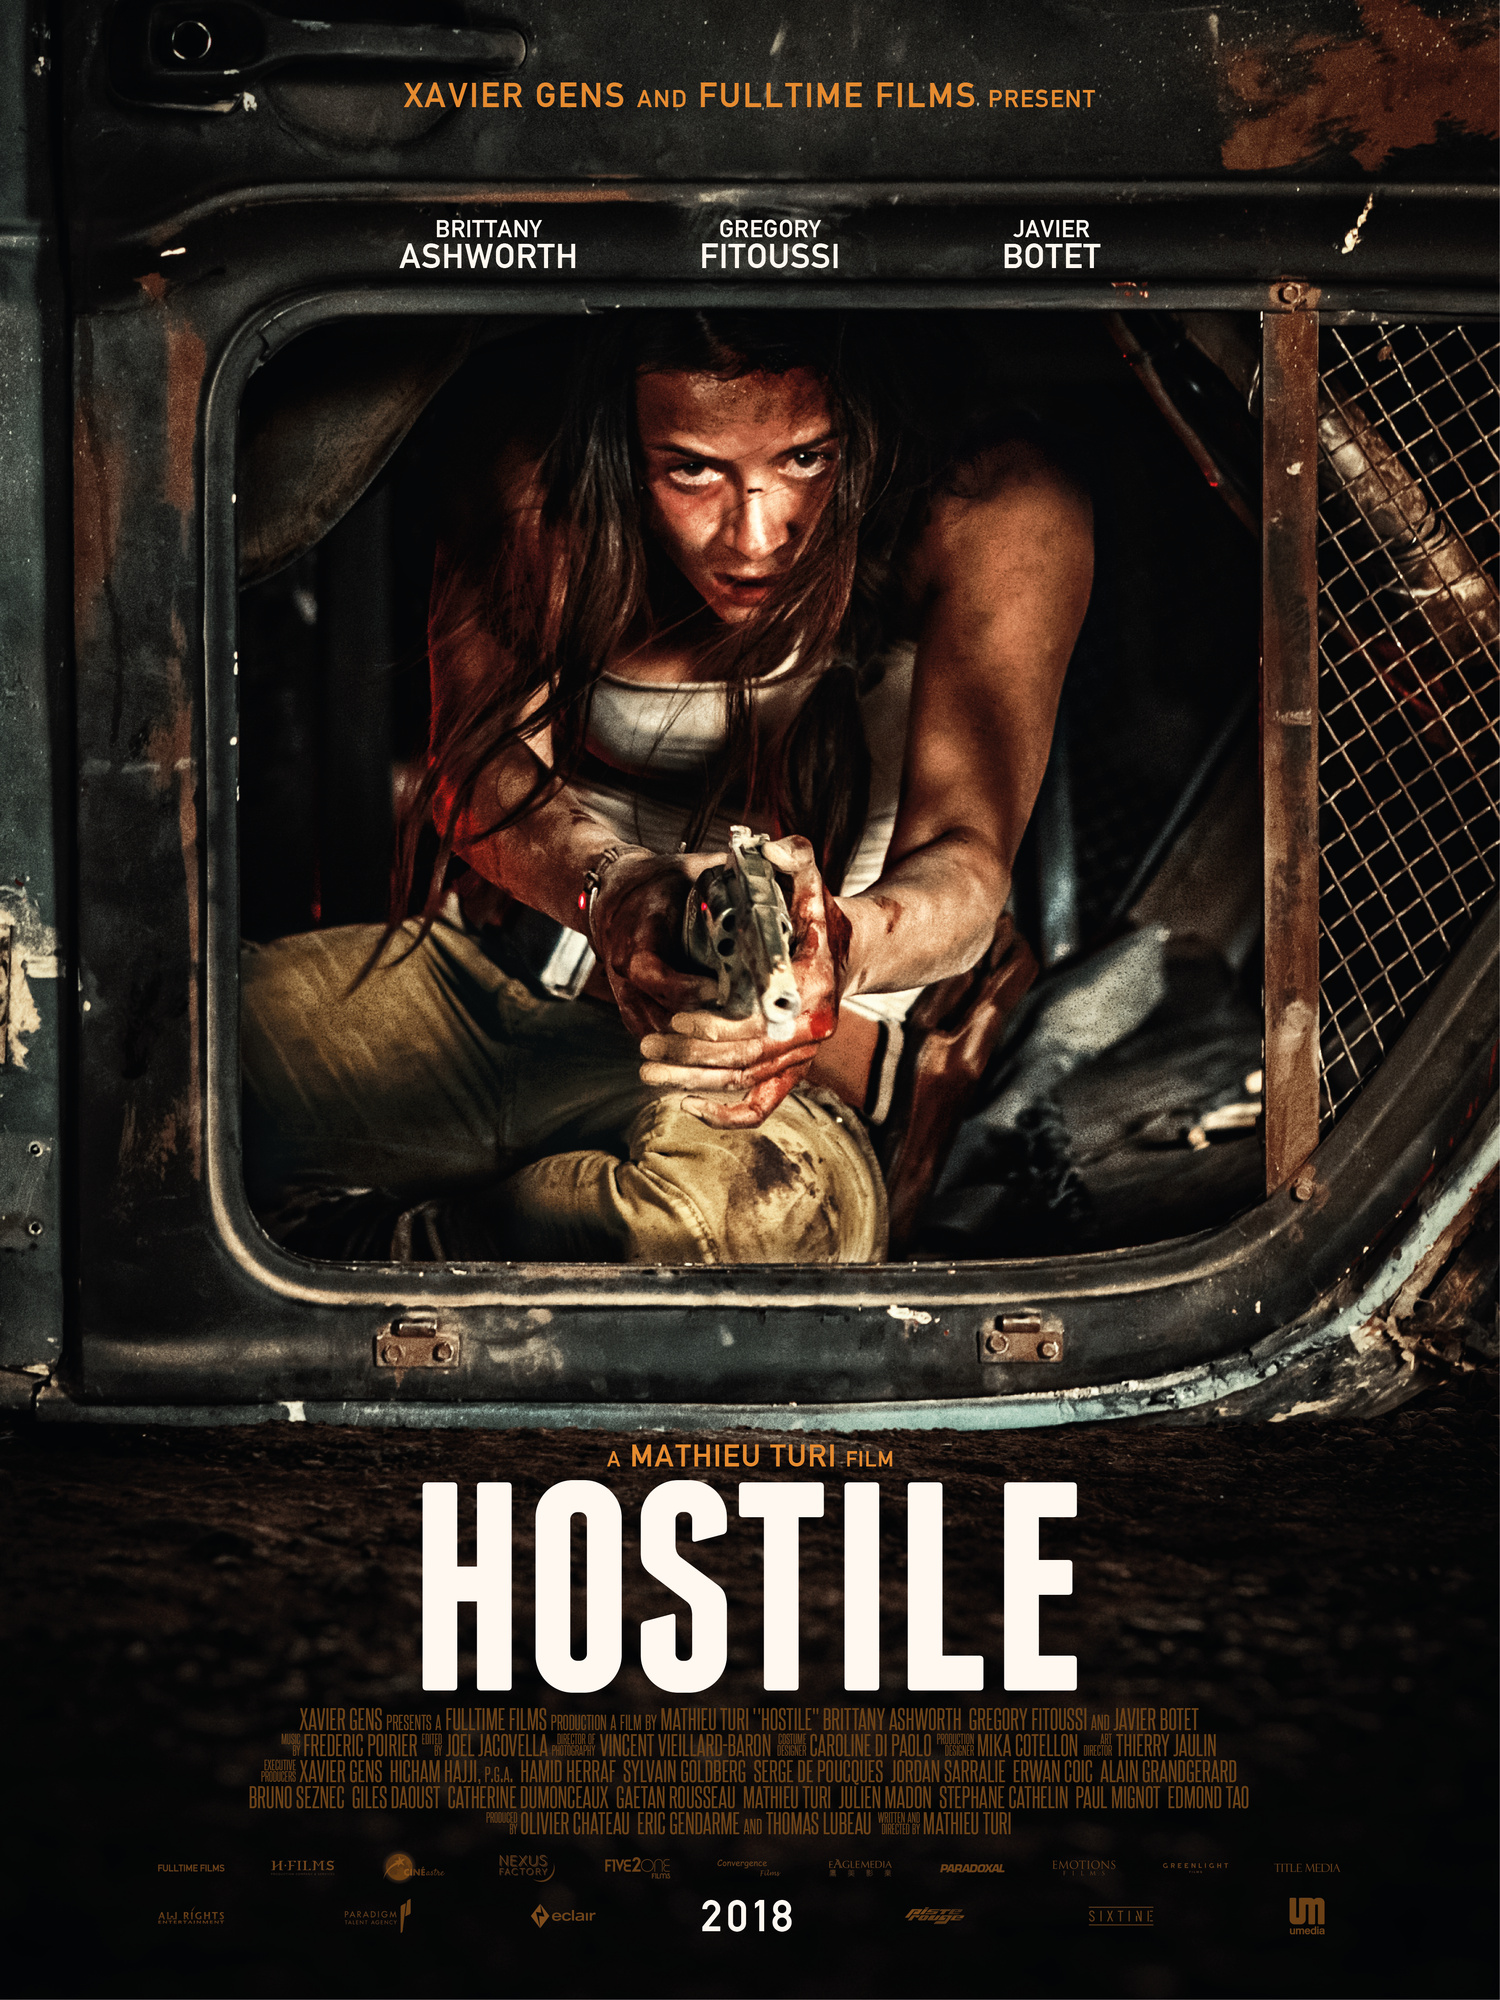 ดูหนังออนไลน์ฟรี หนังใหม่ล่าสุด Hostile 2017